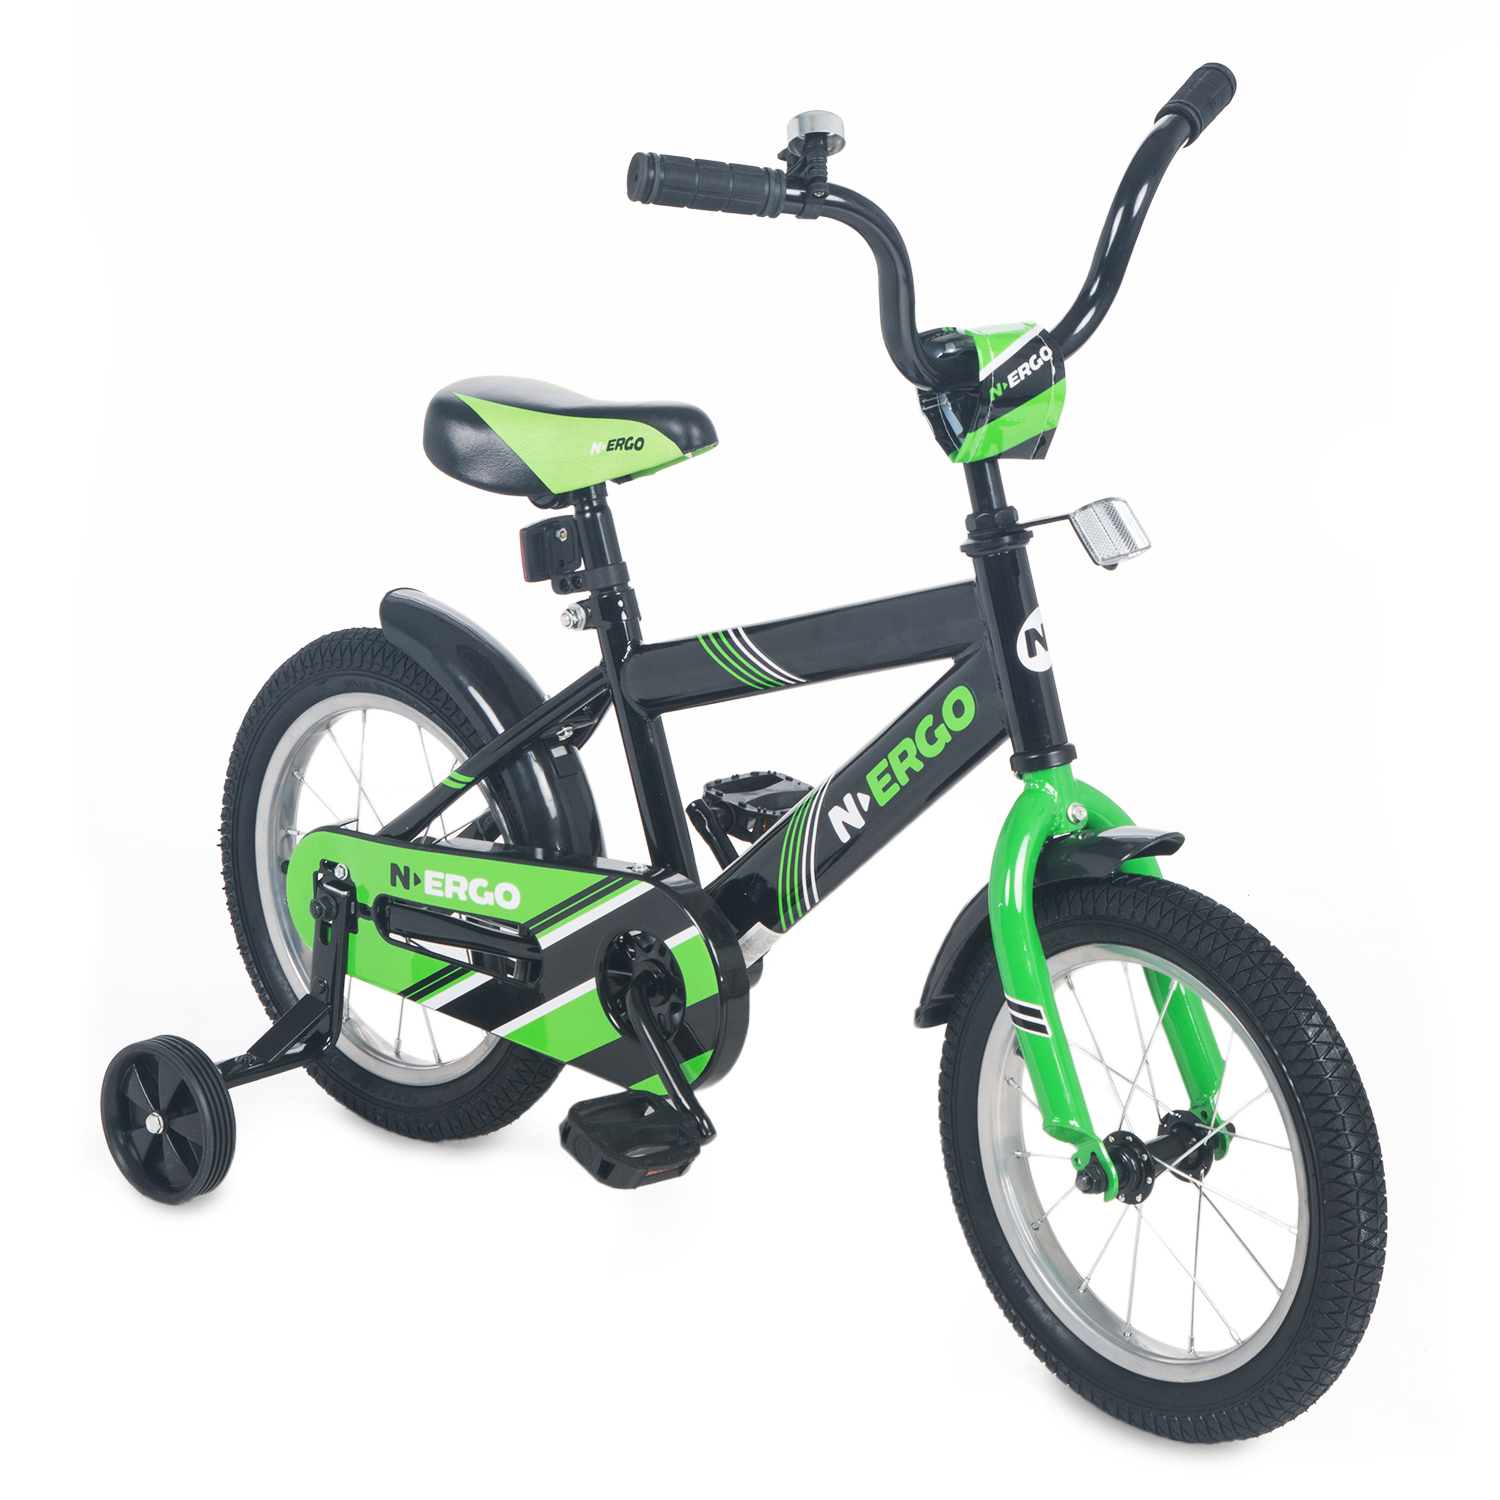 Купить Двухколесный велосипед N.Ergo ВН14229, цвет: черный, зеленый,